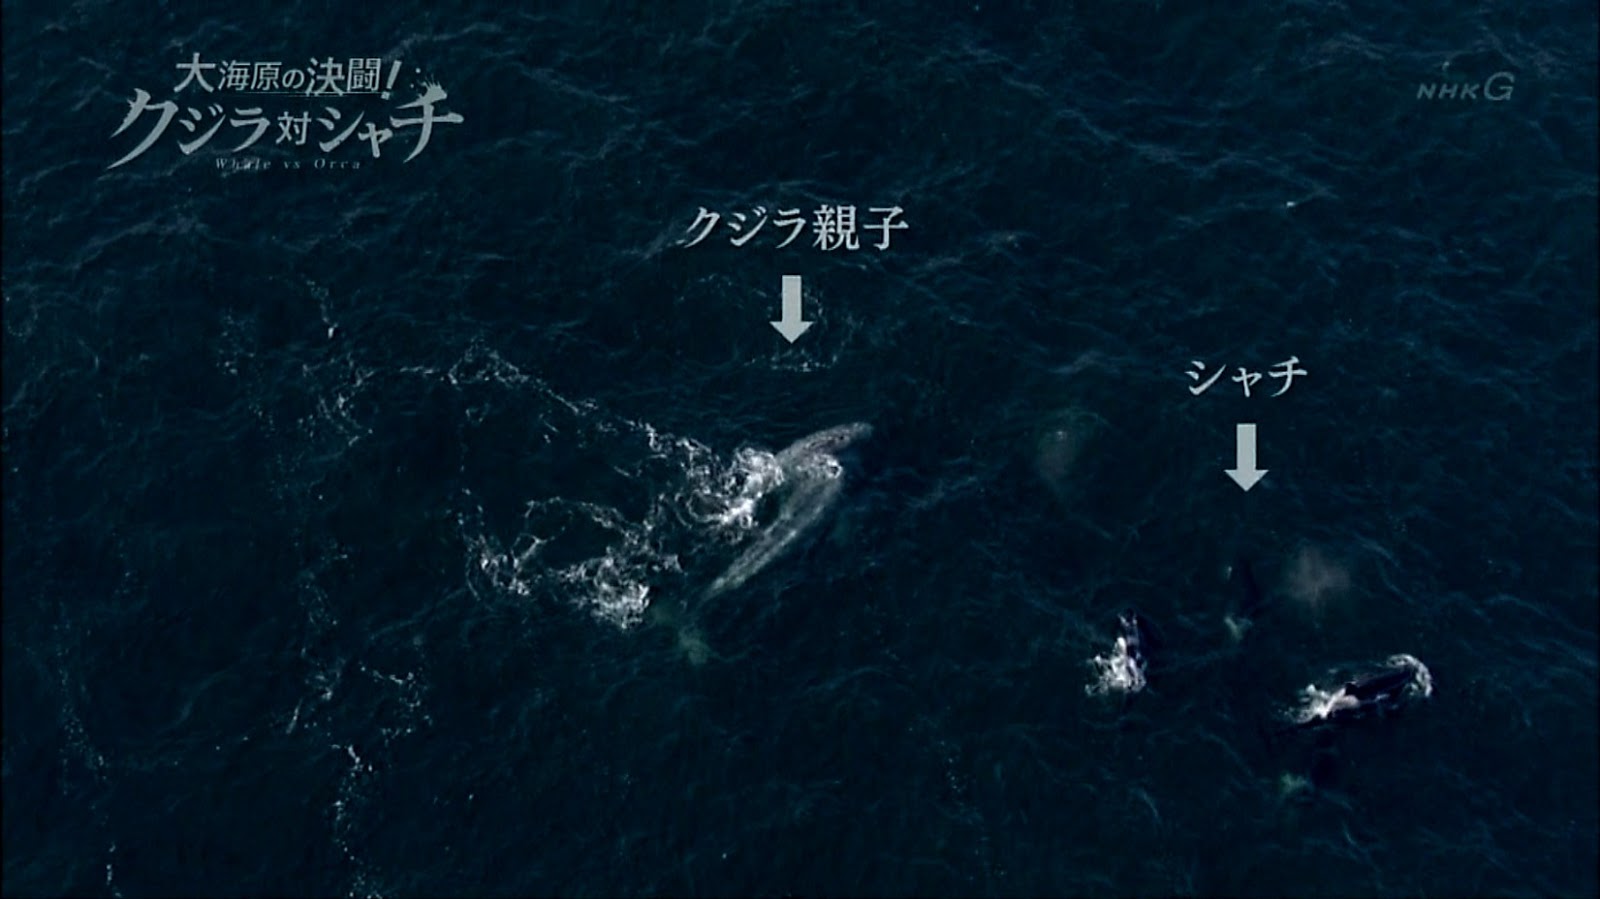 NHKスペシャル 大海原の決闘! クジラ対シャチ [DVD]